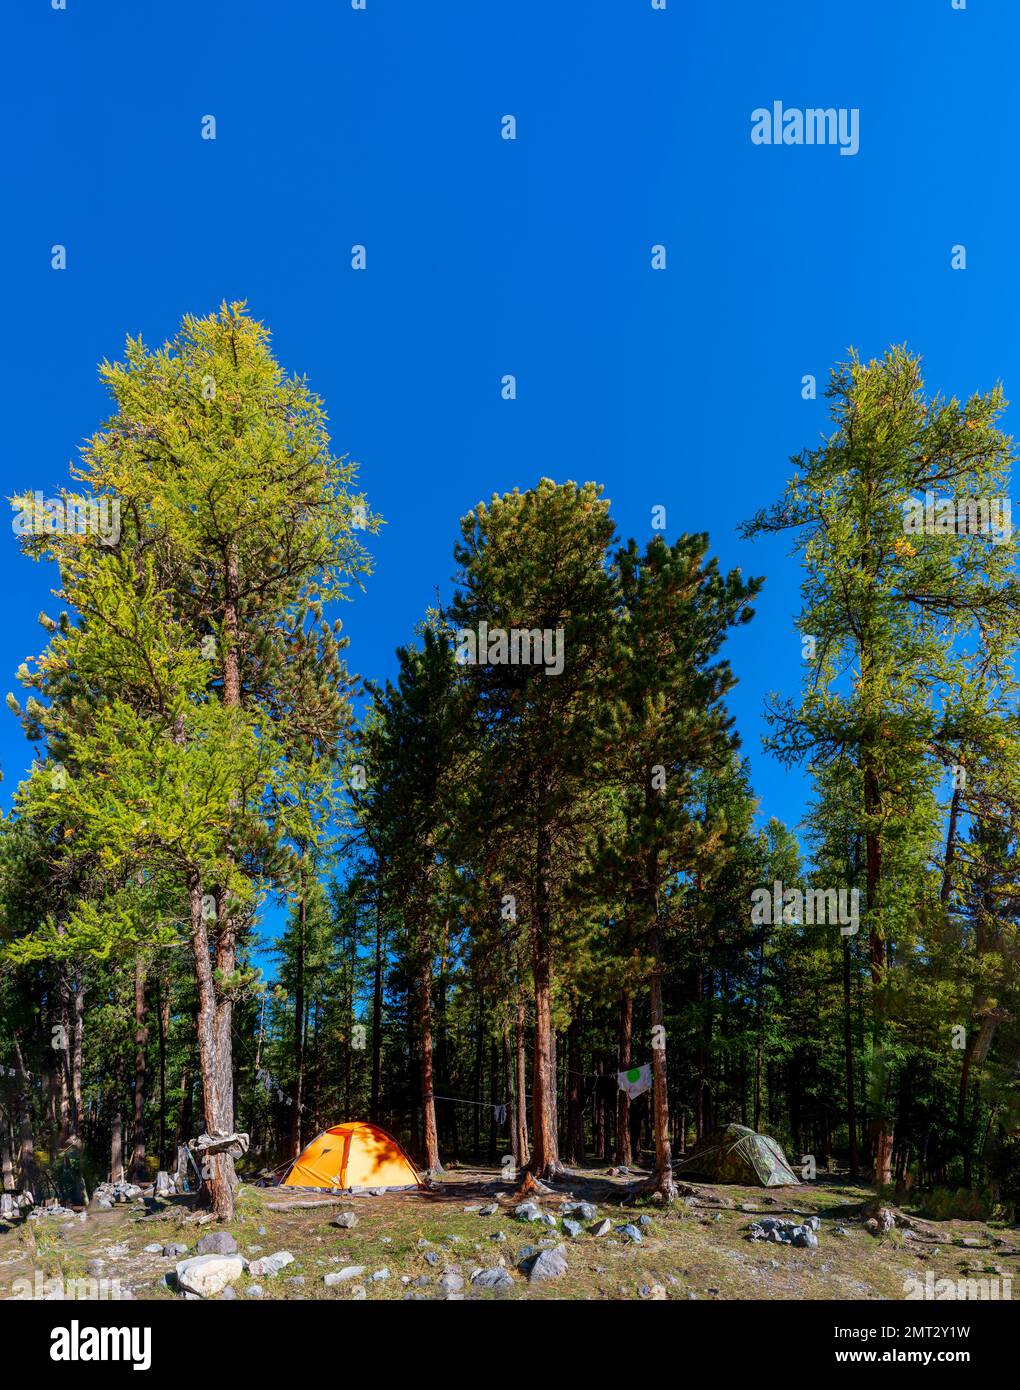 Une tente orange bordée de pierres et d'objets touristiques se dresse dans les arbres d'une forêt dans les montagnes de l'Altaï sous un ciel bleu. Cadre vertical. Banque D'Images